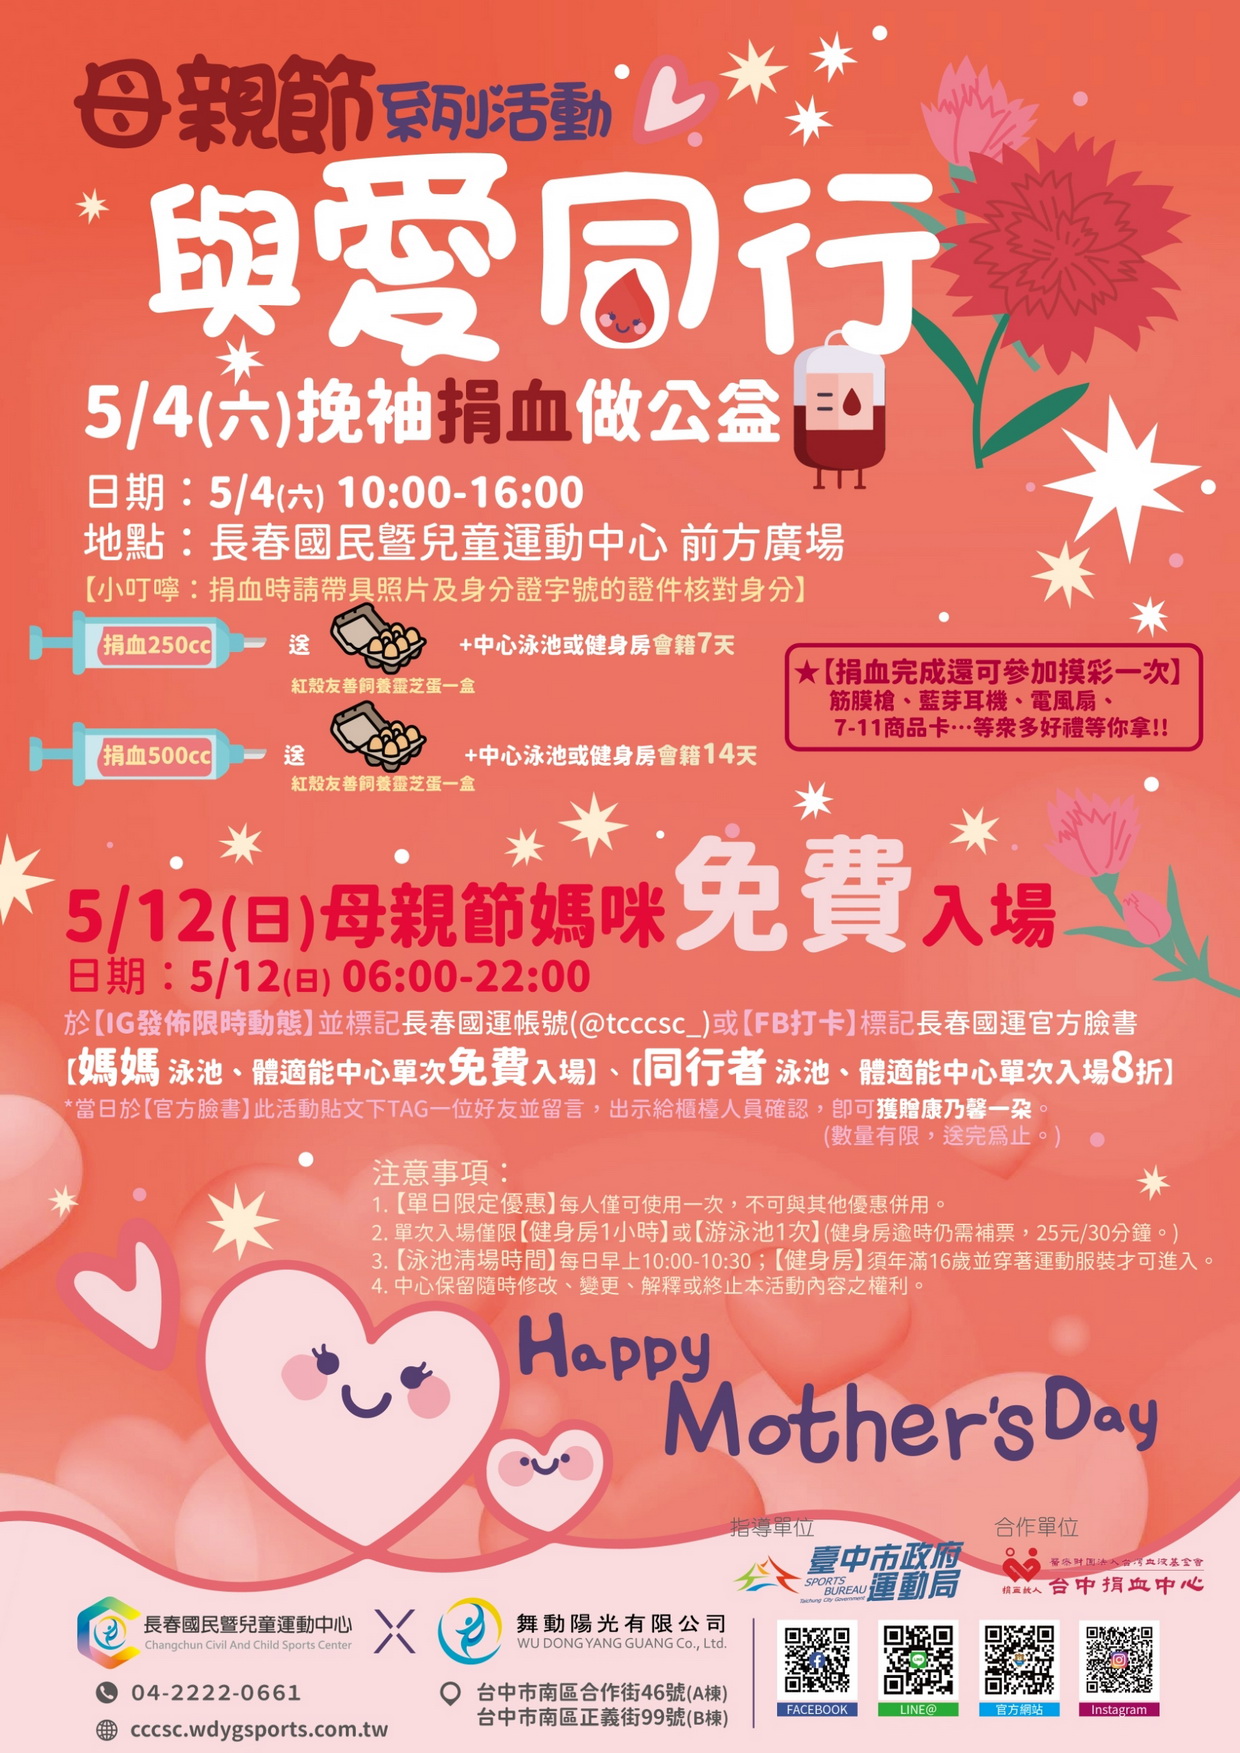 母親節系列活動～與愛同行 DM（JPG檔，詳細文字說明如下述）@長春國民運動中心